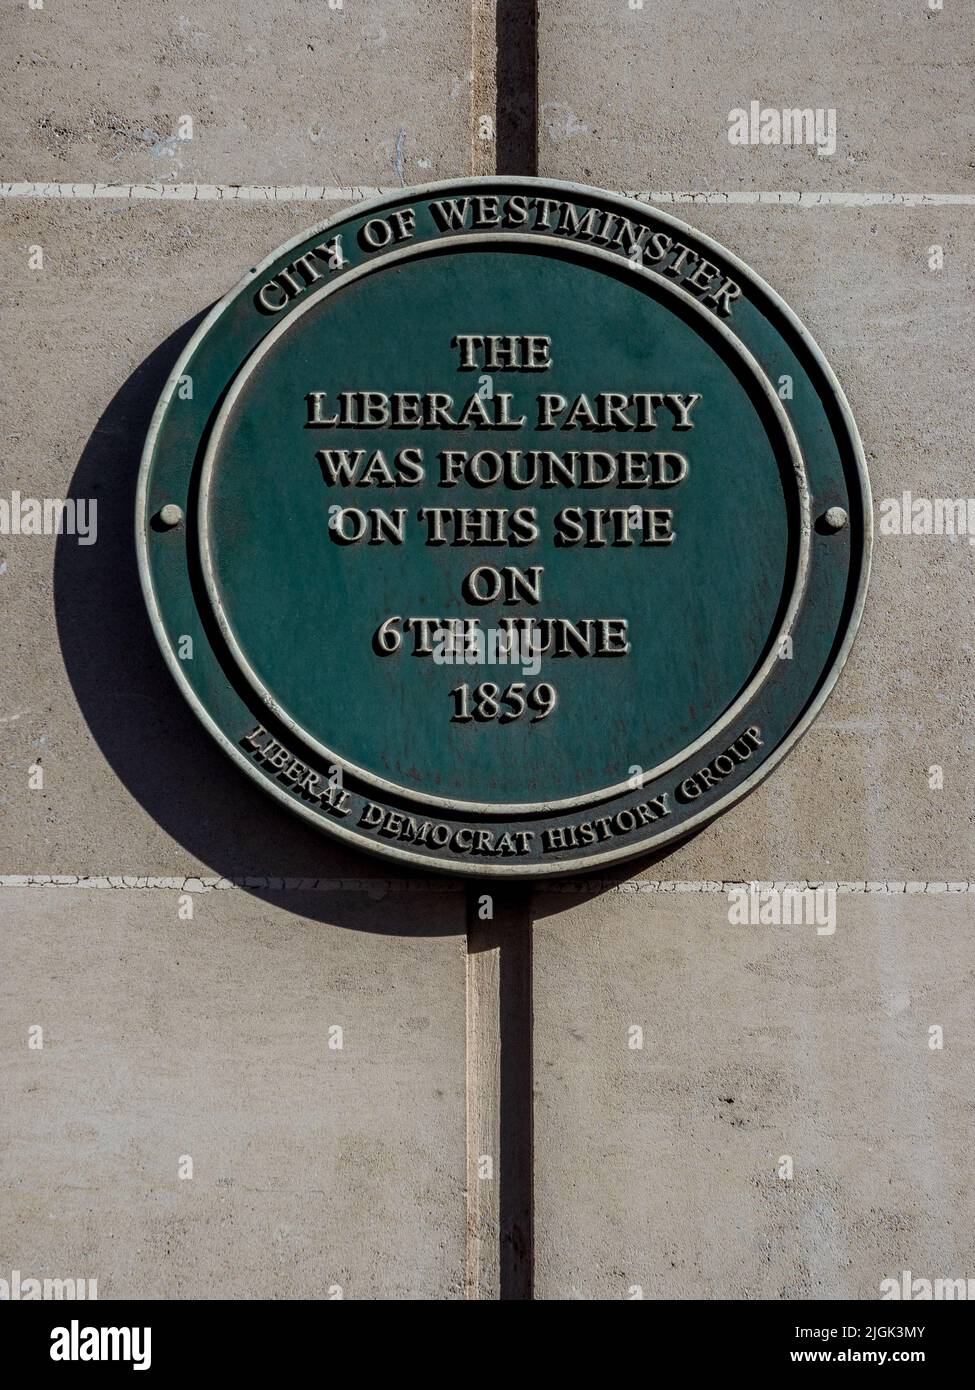 Die Liberale Partei wurde am 6. Juni 1859 im Almack's Club gegründet. Gedenkplakette von City of Westminster & Liberal Democrat History Group Stockfoto